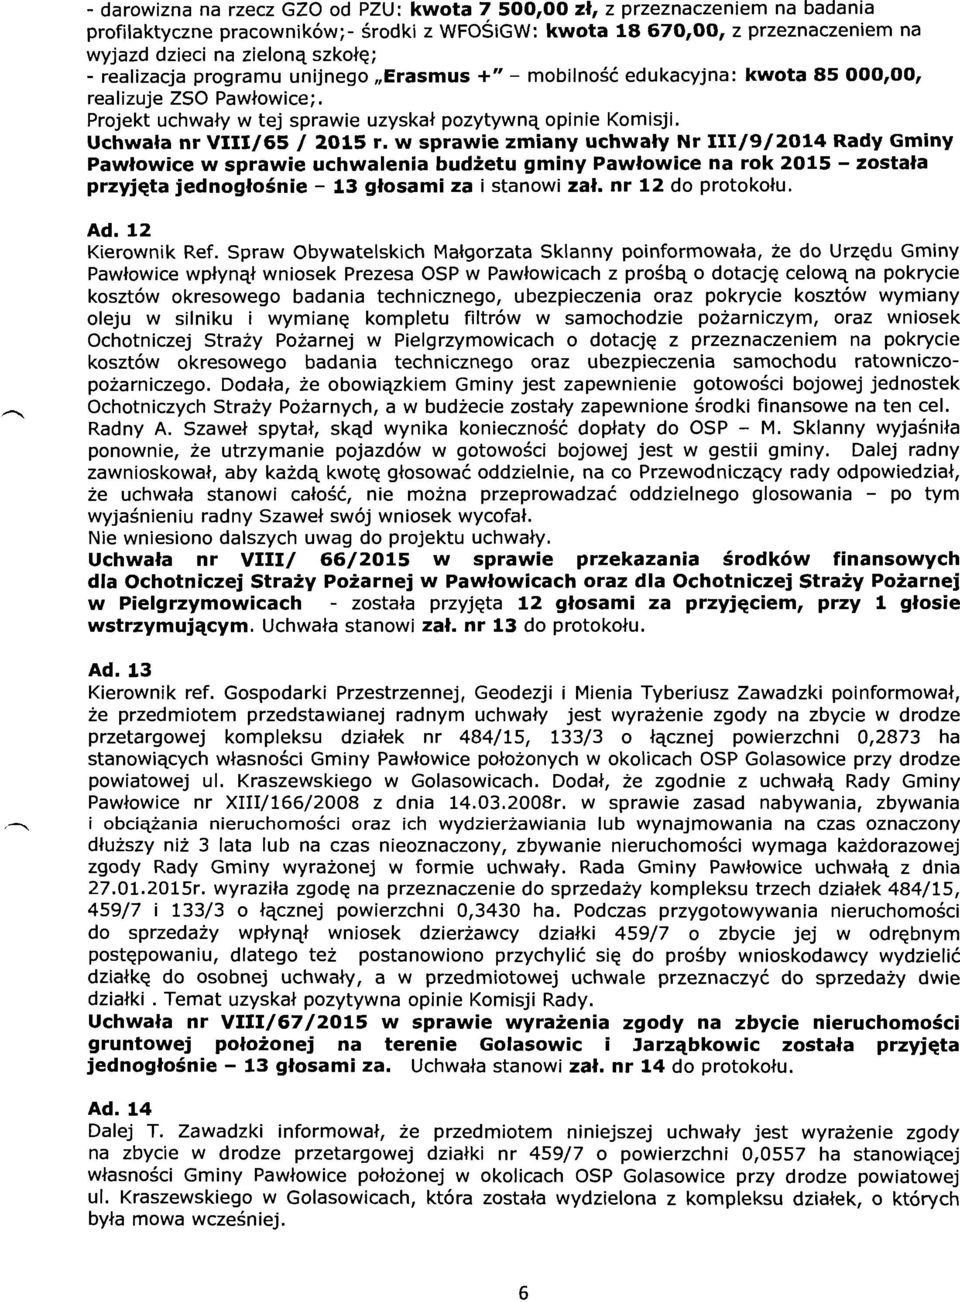 w sprawie zmiany uchwały Nr 111/9/2014 Rady Gminy Pawłowice w sprawie uchwalenia budżetu gminy Pawłowice na rok 2015 - została przyjęta jednogłośnie - 13 głosami za i stanowi zał. nr 12 do protokołu.